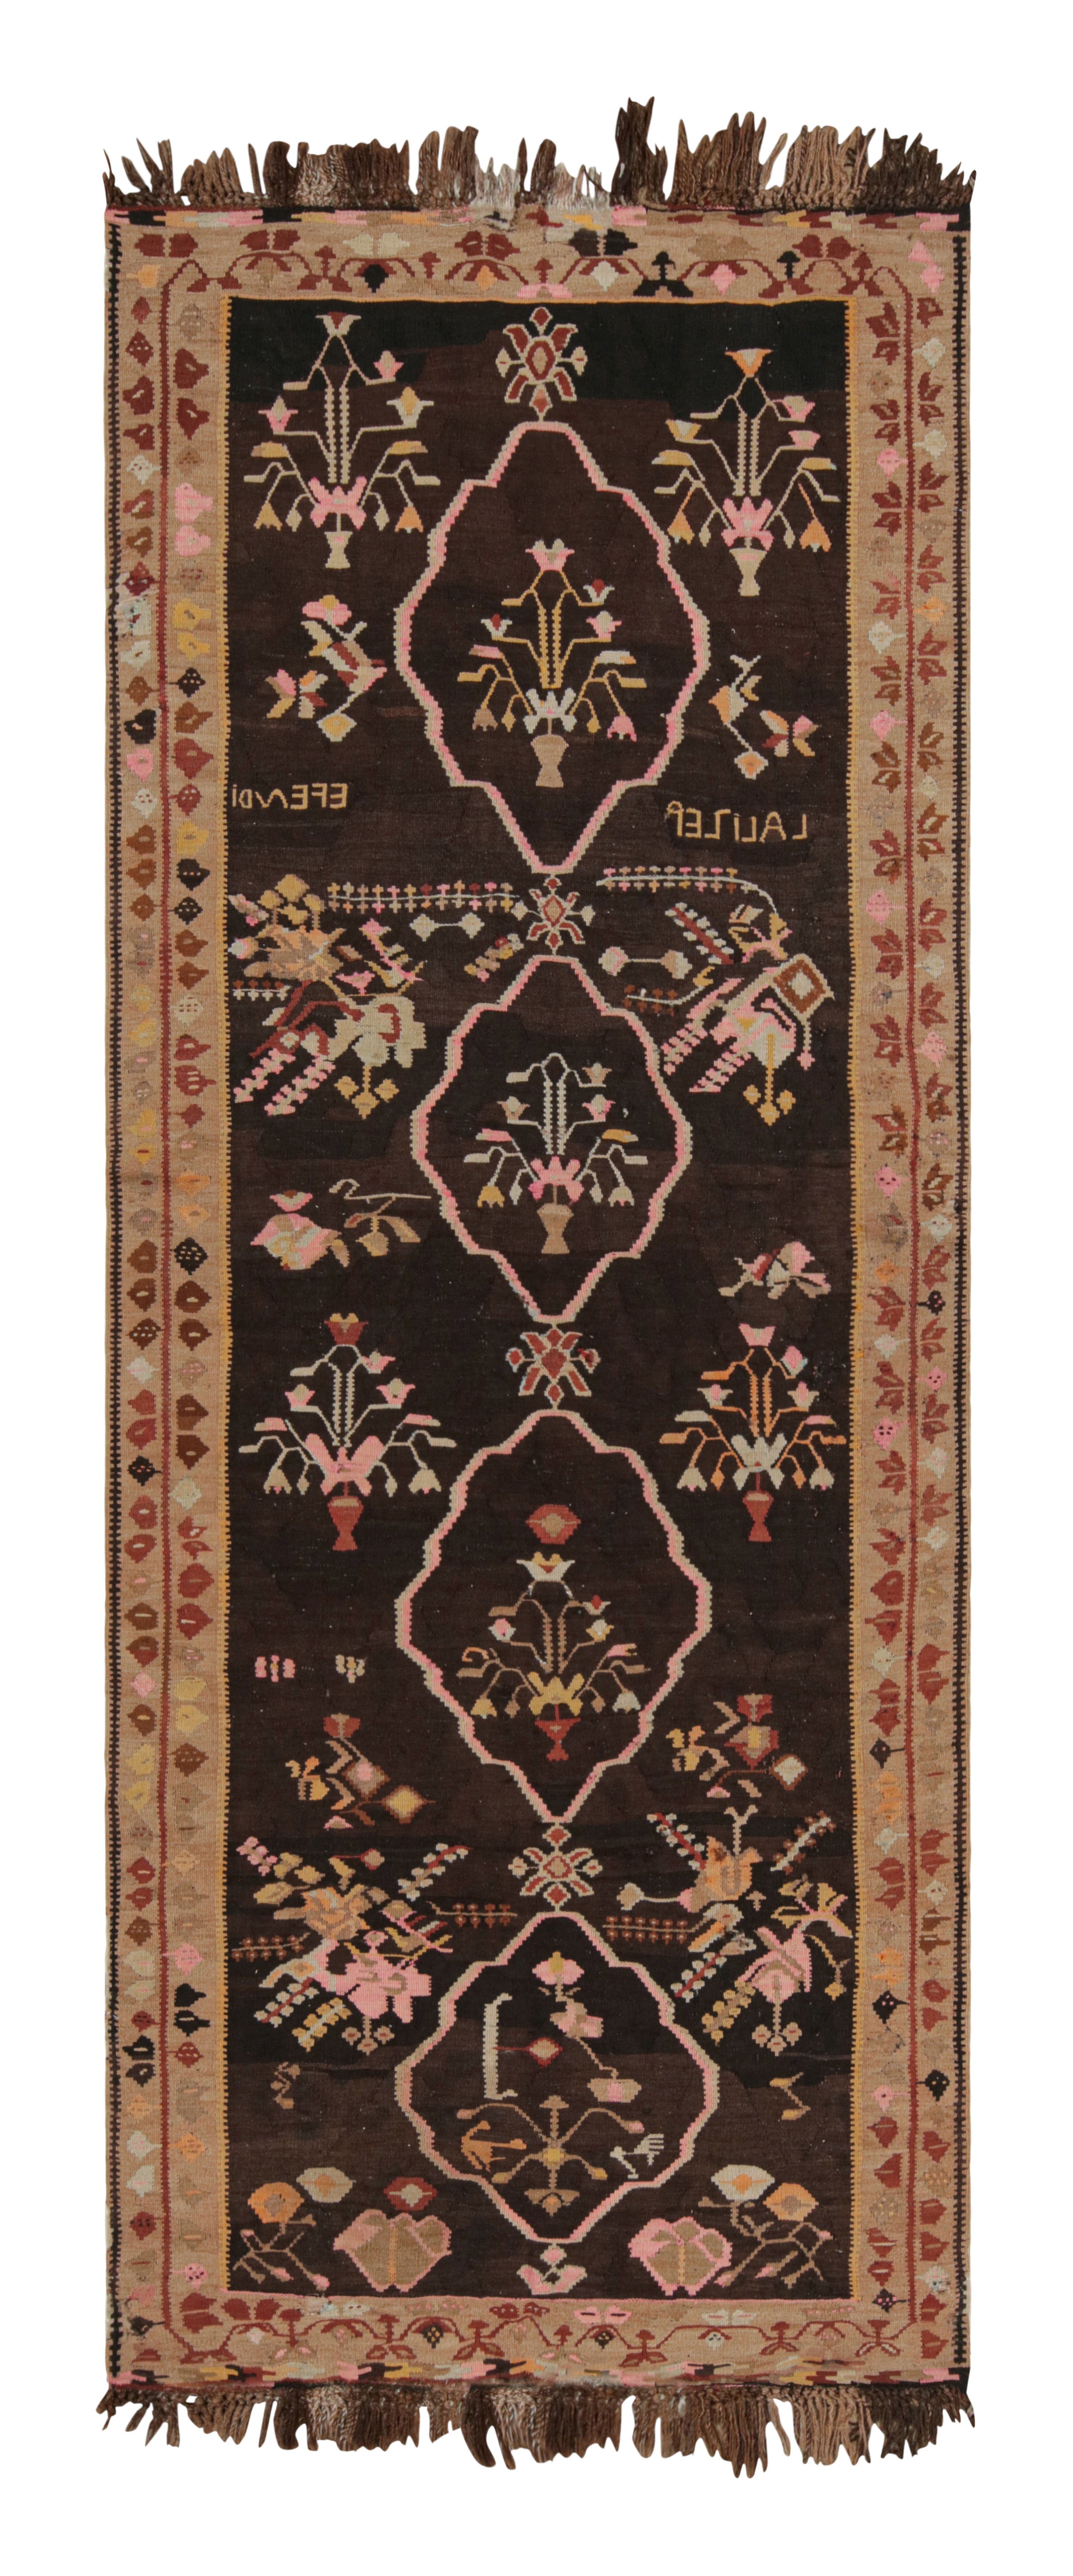 Handwoven Midcentury Vintage Rug in Beige Brown Floral Pattern by Rug & Kilim For Sale